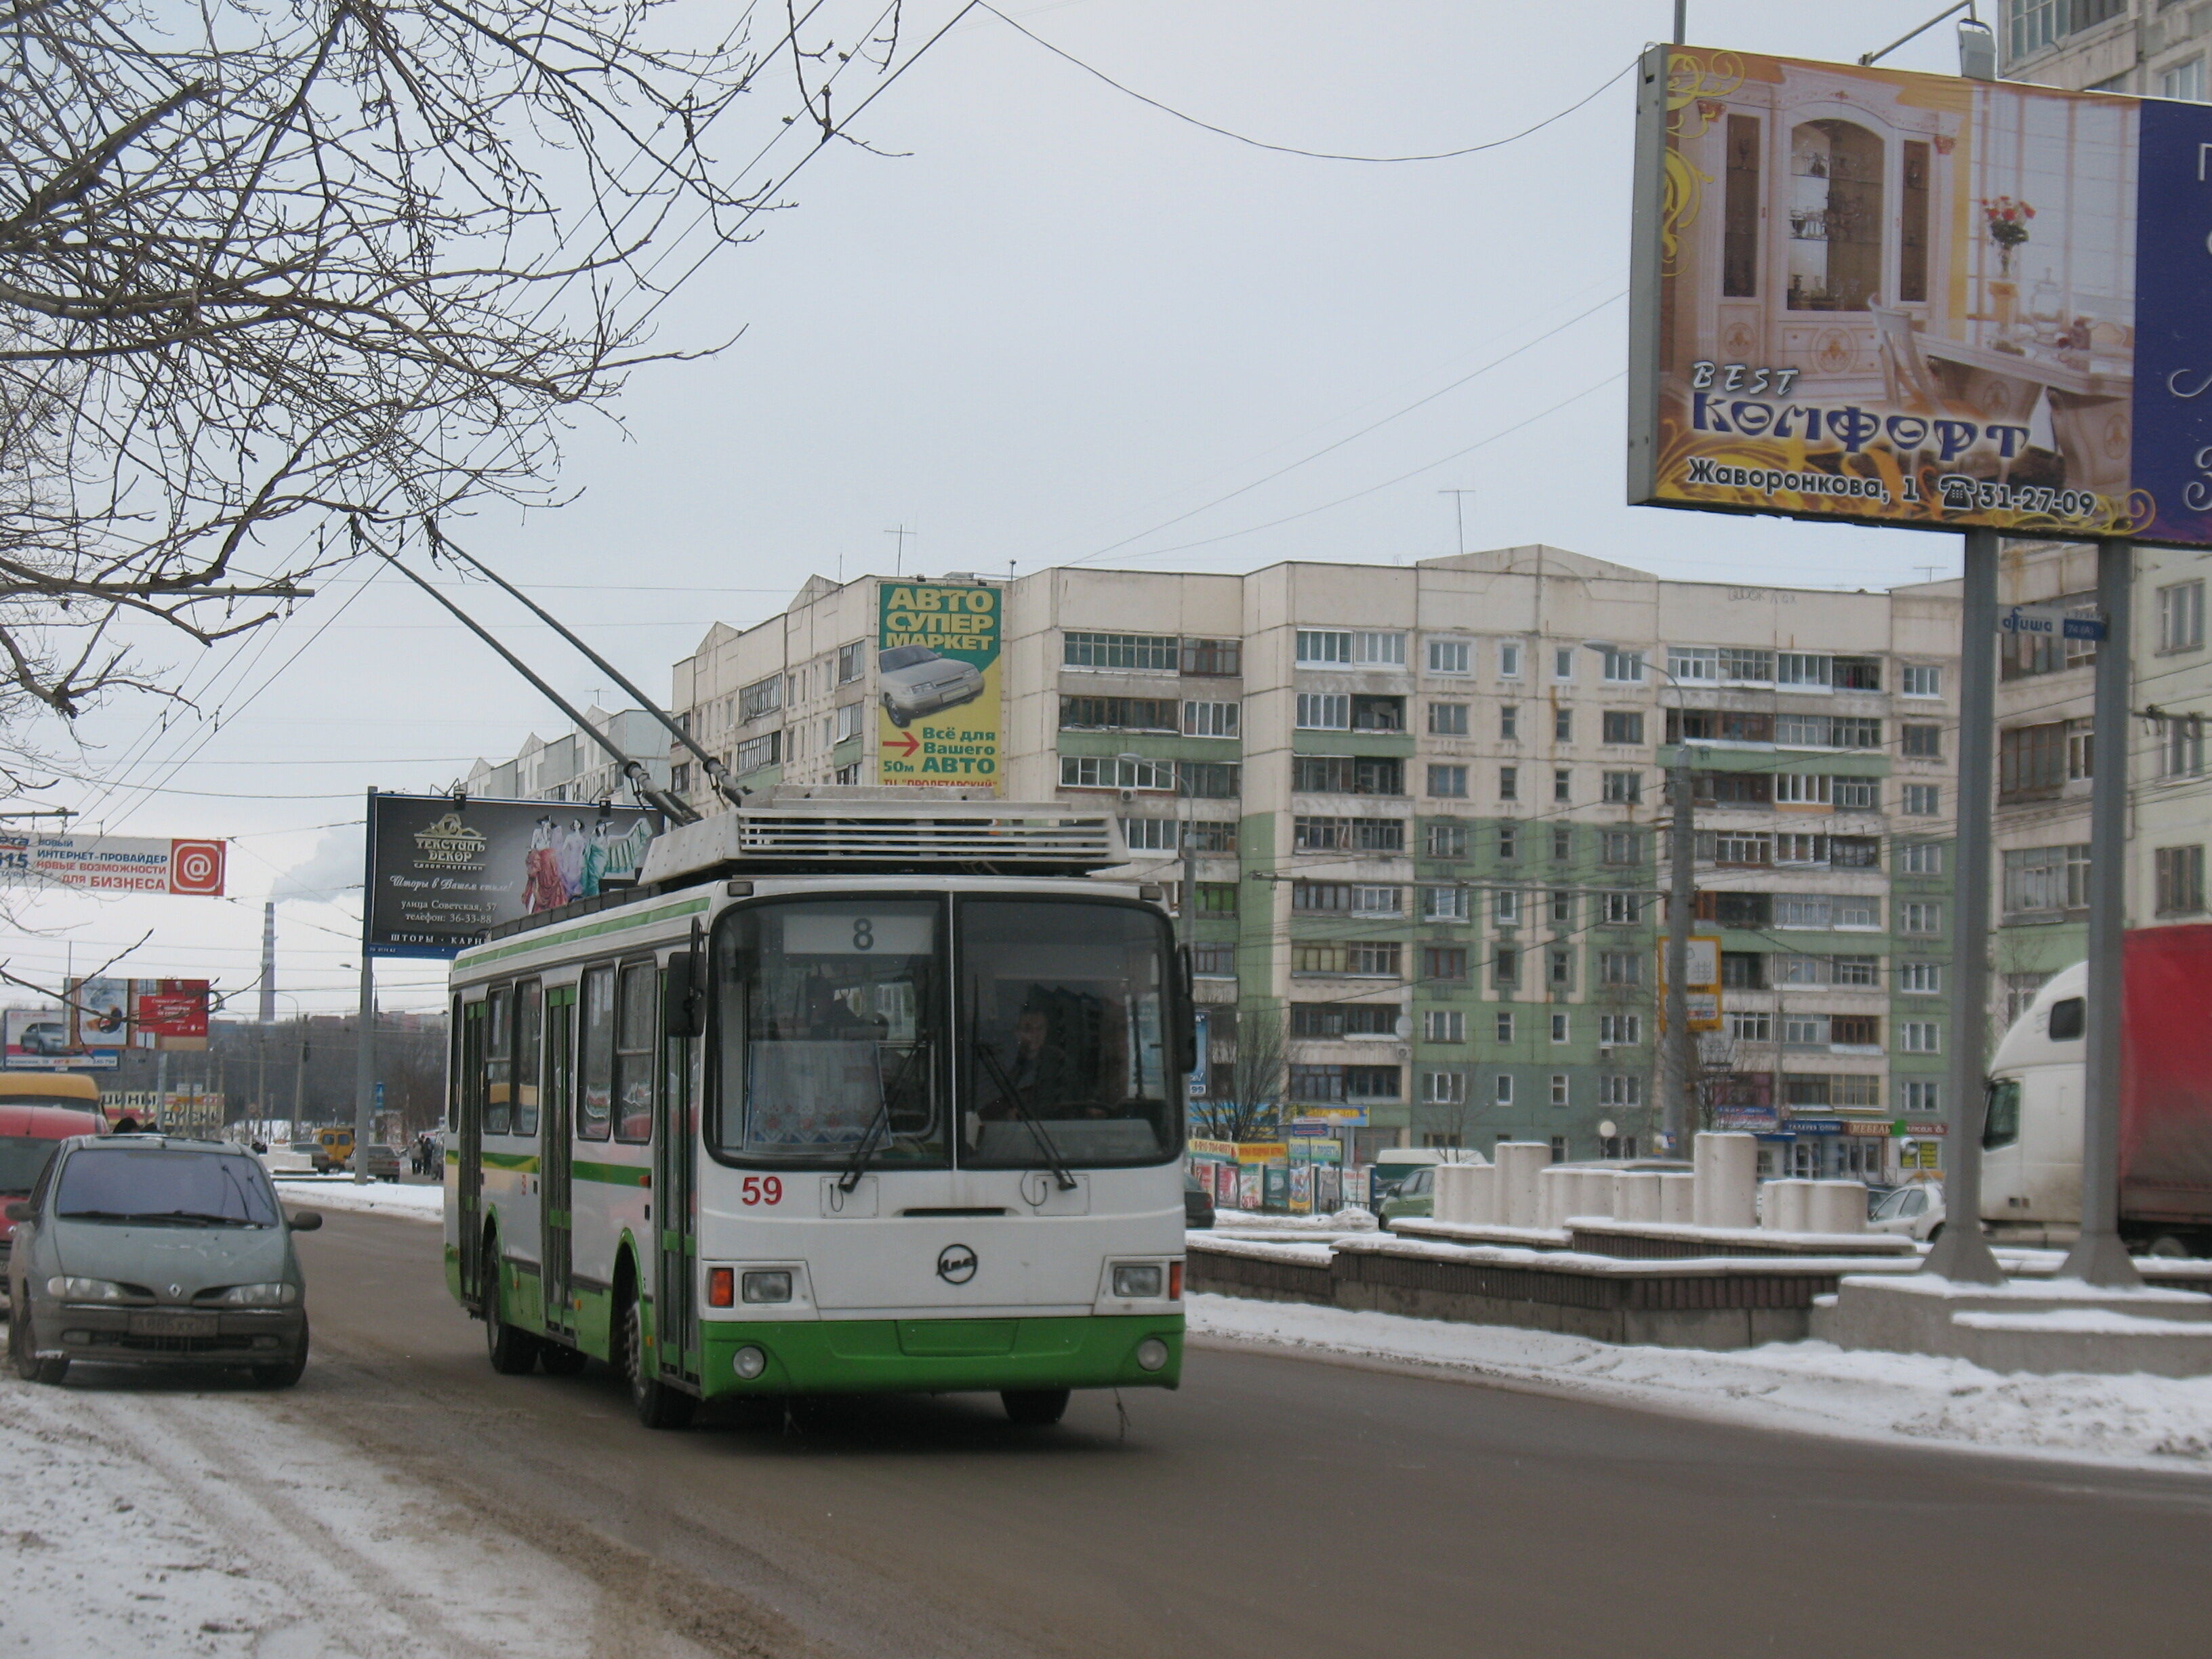 Троллейбус 59 ЛиАЗ-5280 построен в 2006. Новая троллейбусная линия к Ложевой улице, работавшая в 2010-х годах